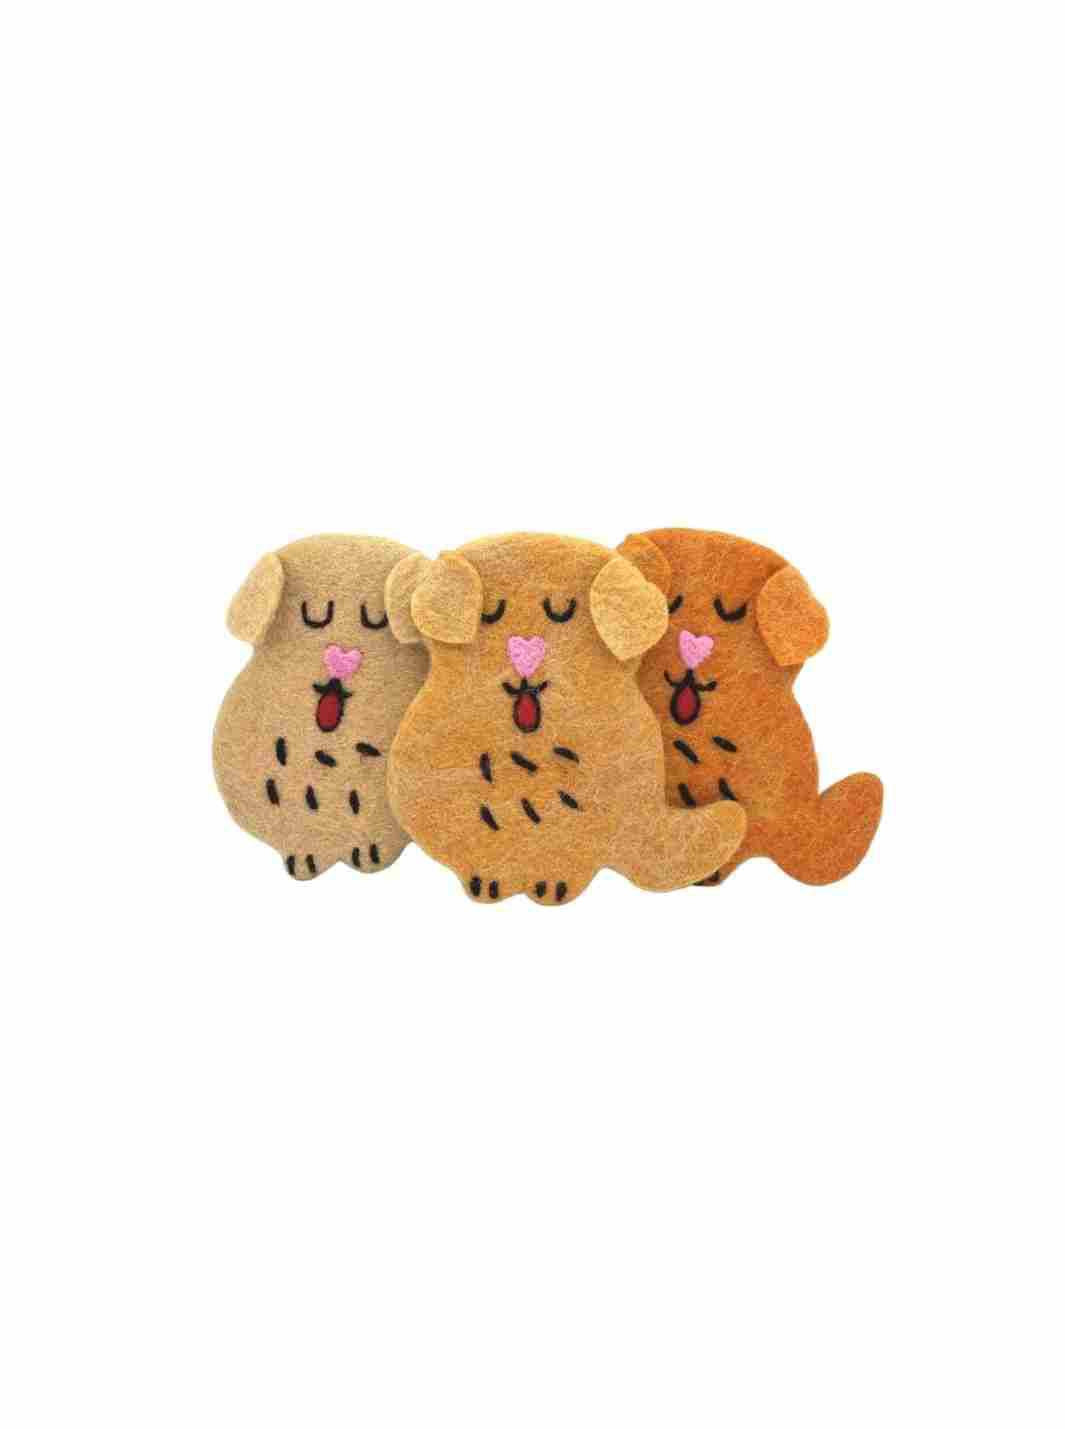 Eco Coaster - Golden Retriever Dog (Dark Cream) | Eco Dog Coaster | Drink Coaster | Dog Coaster | Eco Dog & Cat